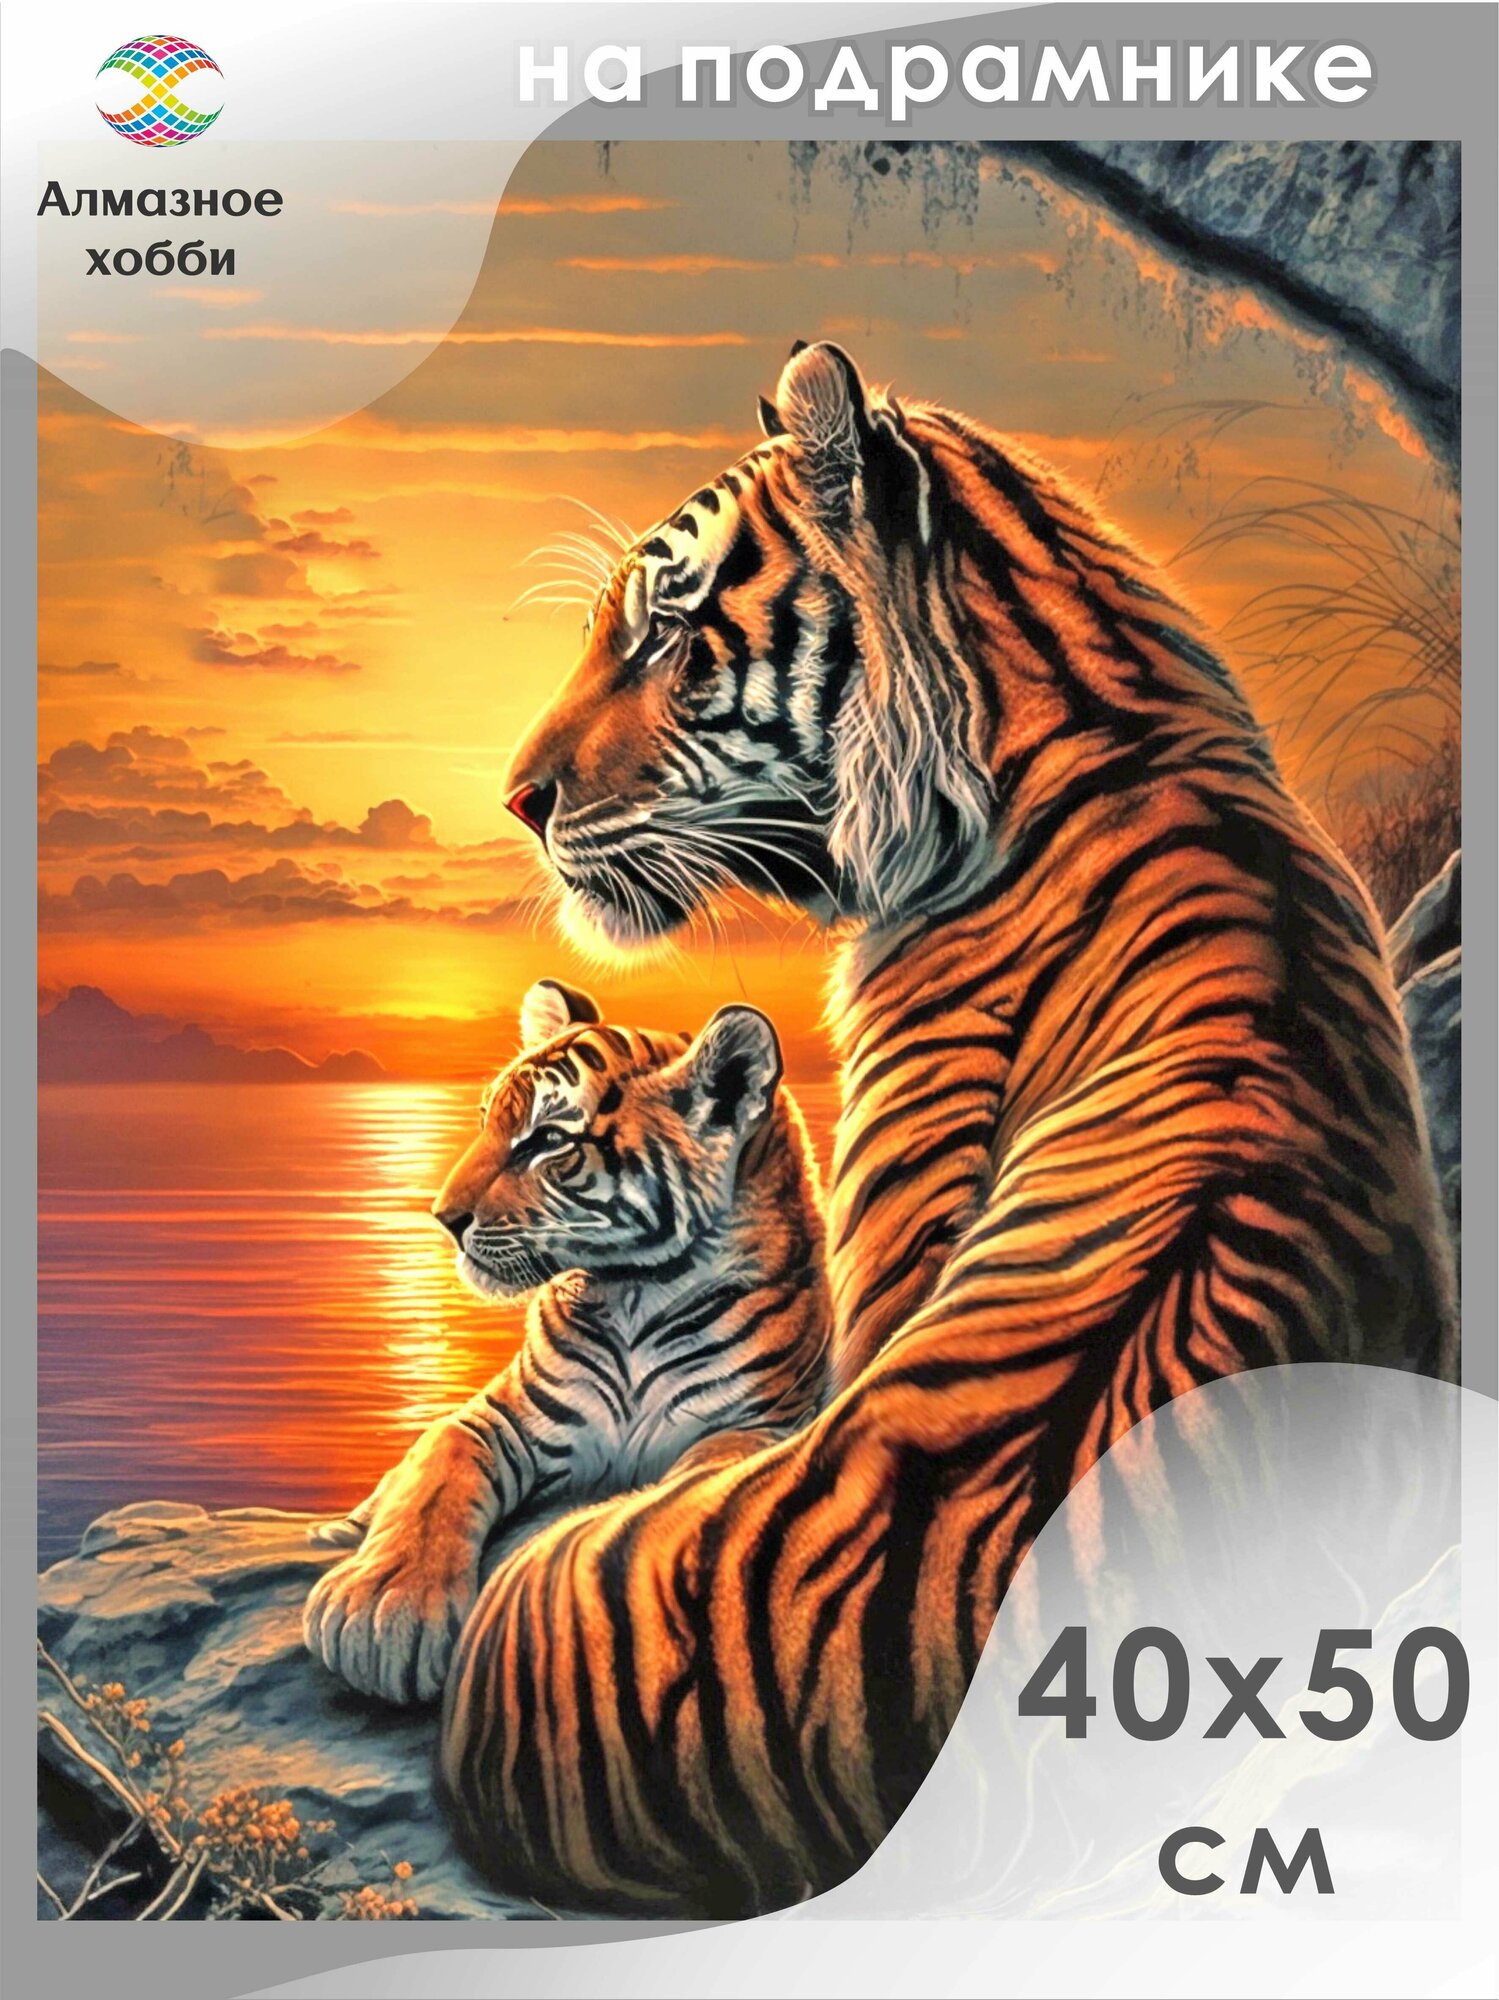 Алмазная мозаика на подрамнике Картина стразами Алмазное хобби "Тигрица и тигренок на закате" 40х50